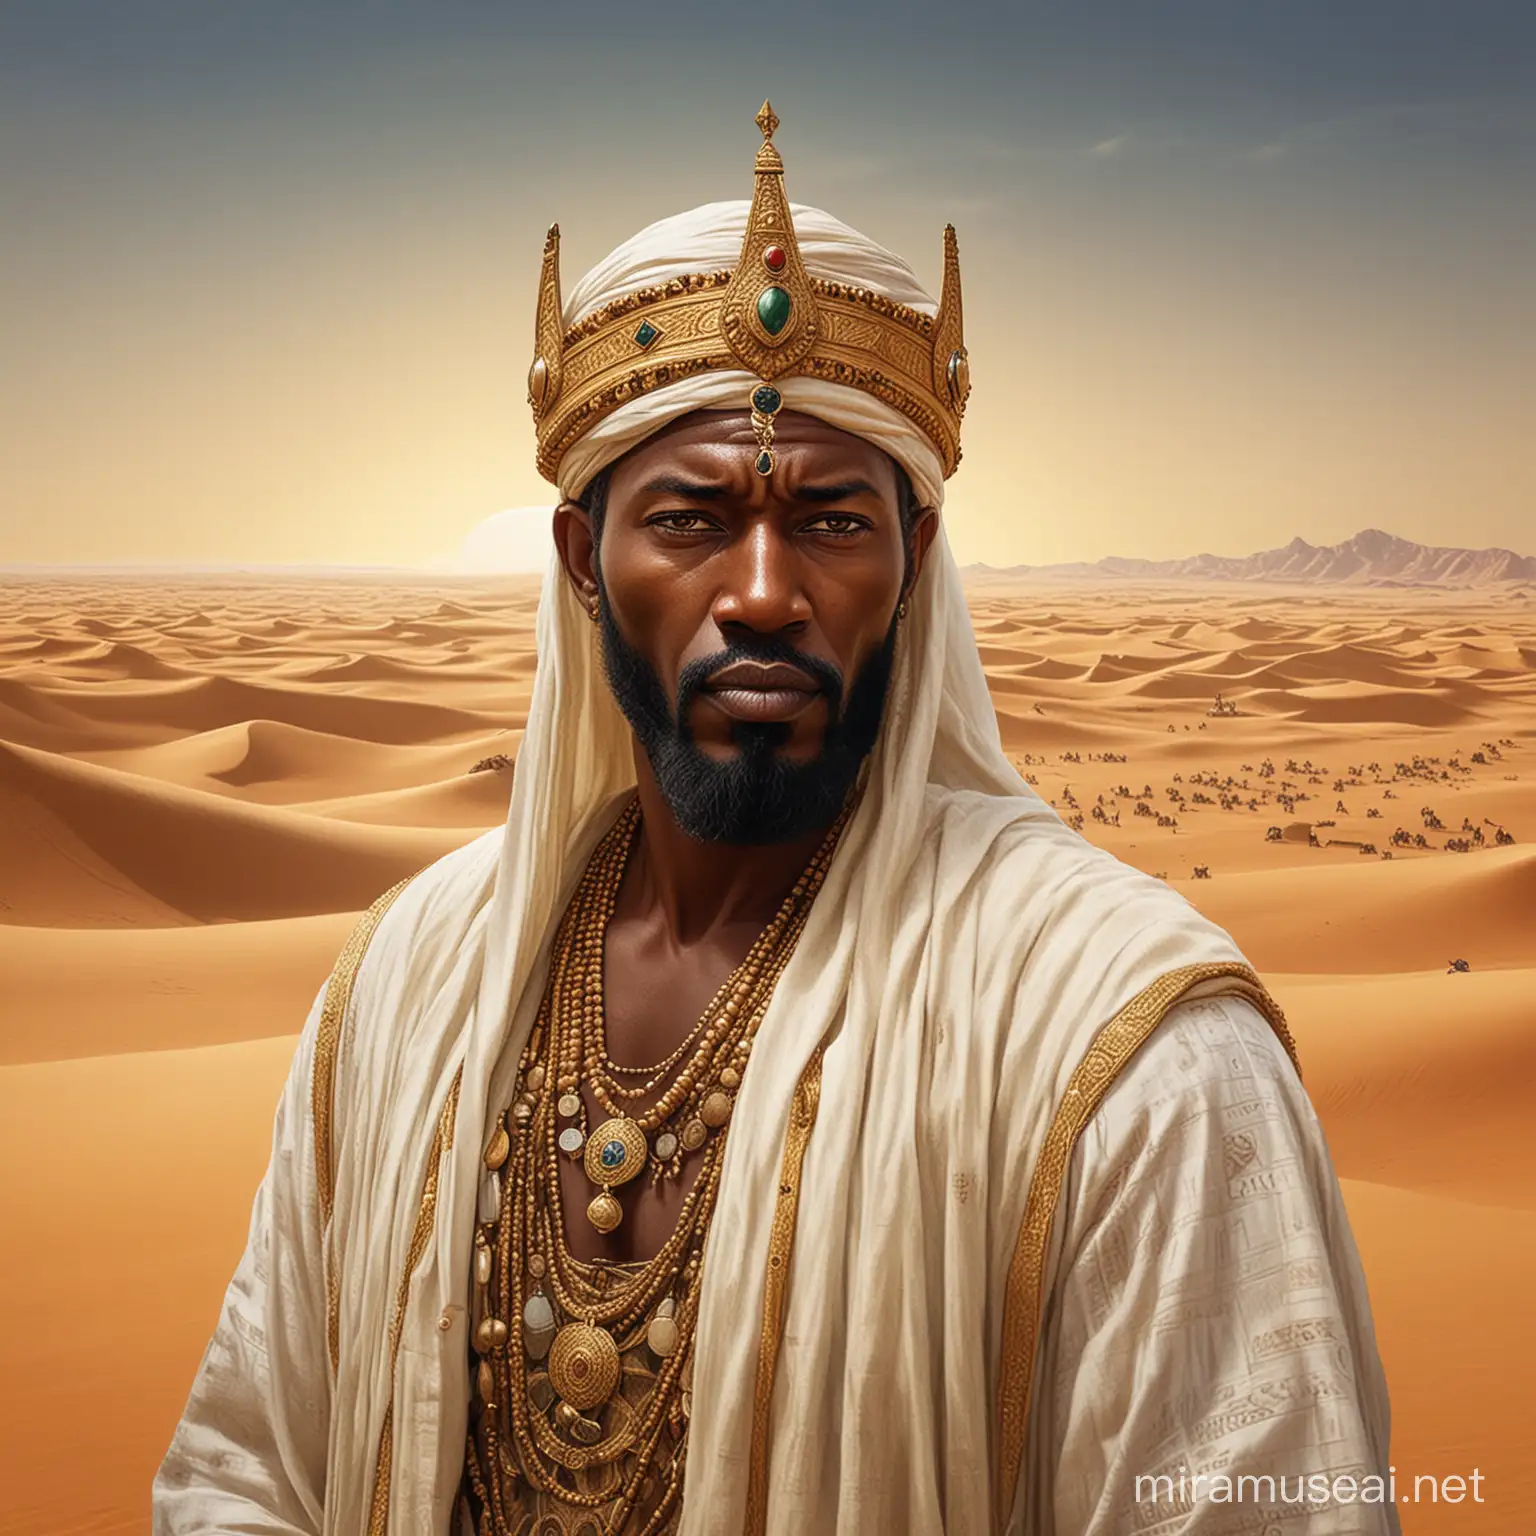 Mansa Musa Majestic Ruler of Mali Gazing Towards Future Horizons